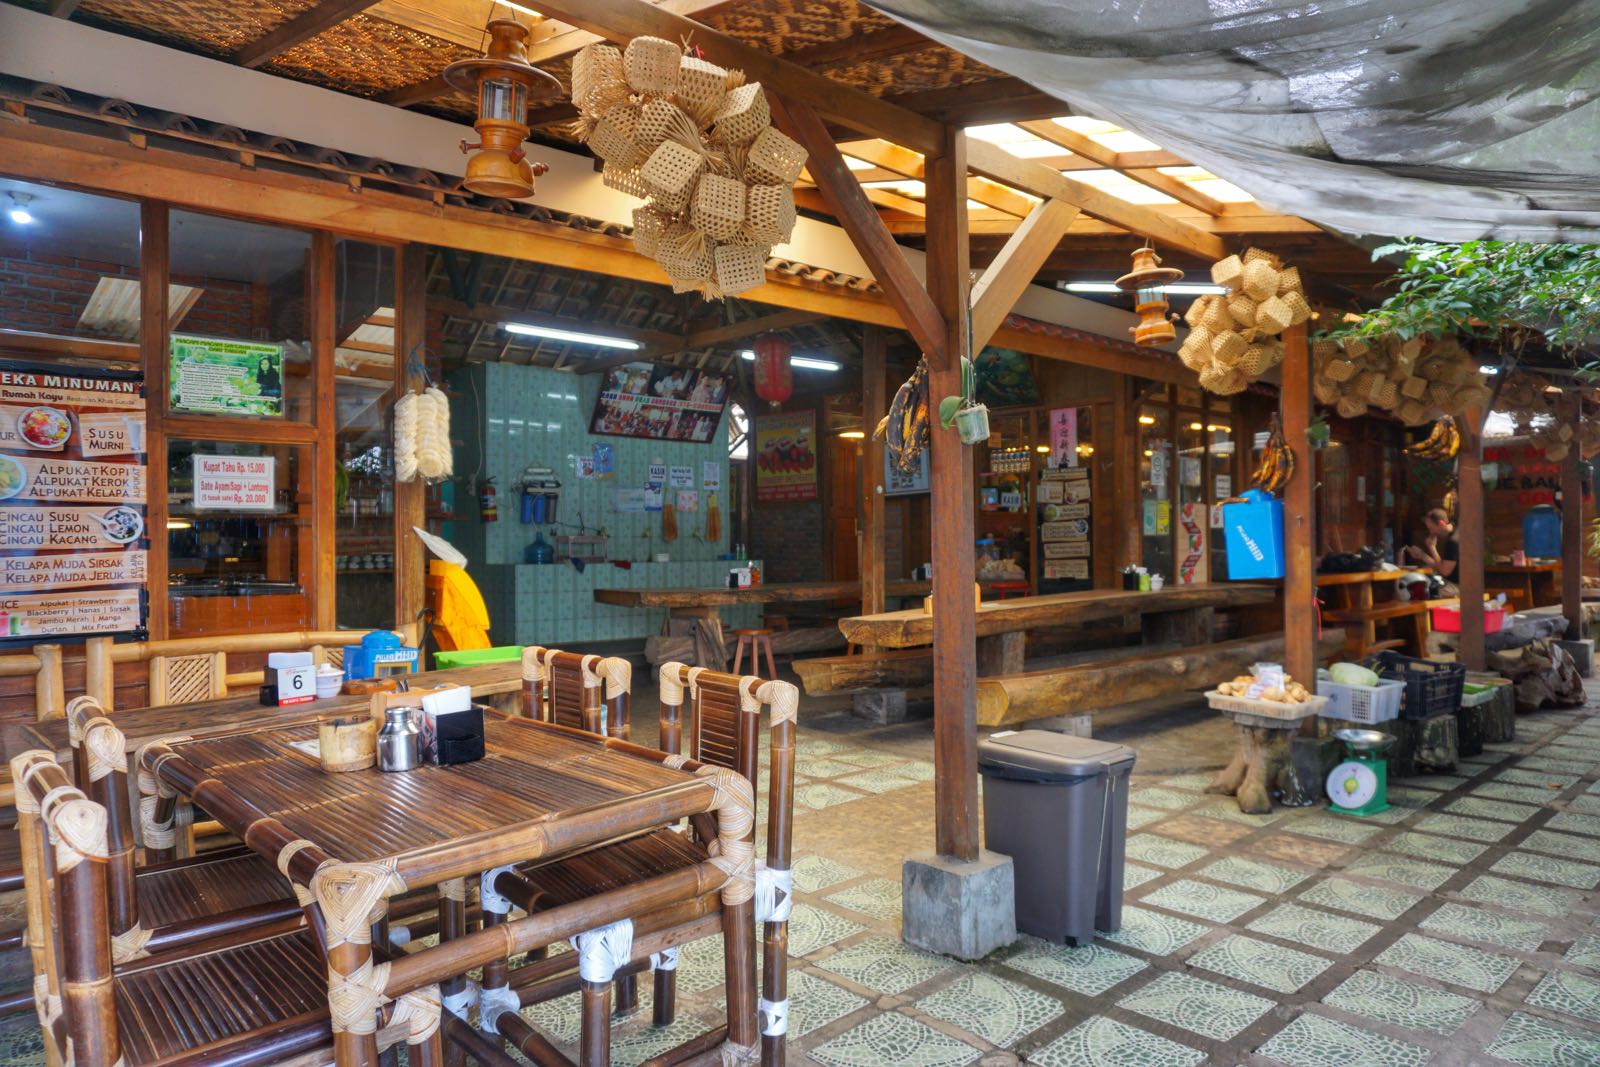  Rumah  Kayu  Kafe Taiwan Lembang  PergiDulu com